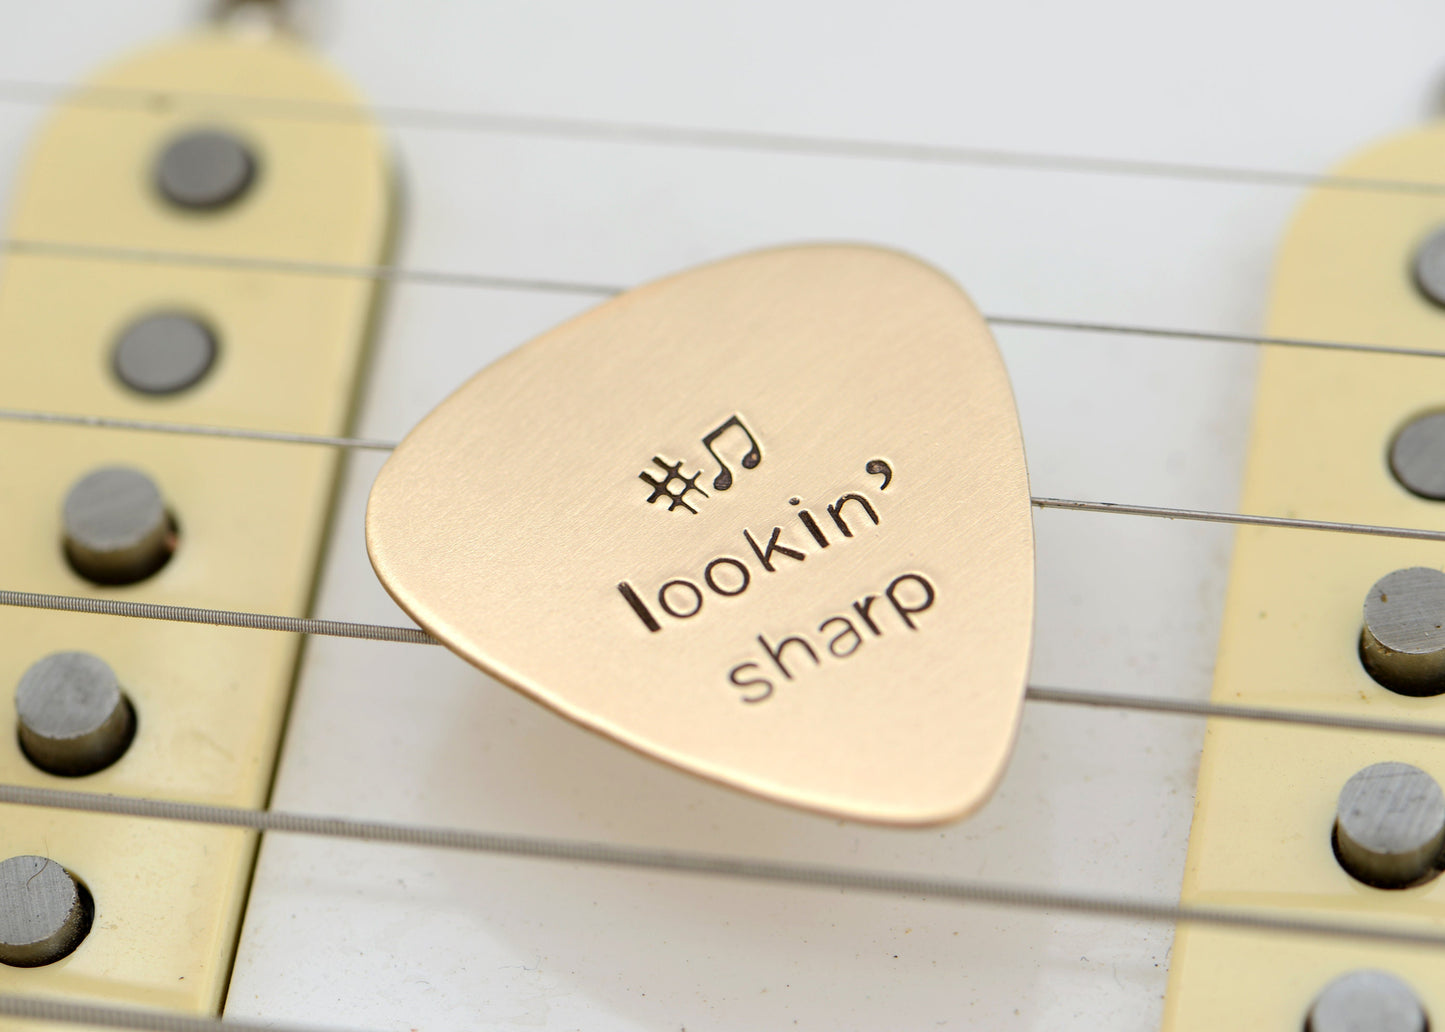 Lookin’ Sharp Guitar Pick in Bronze